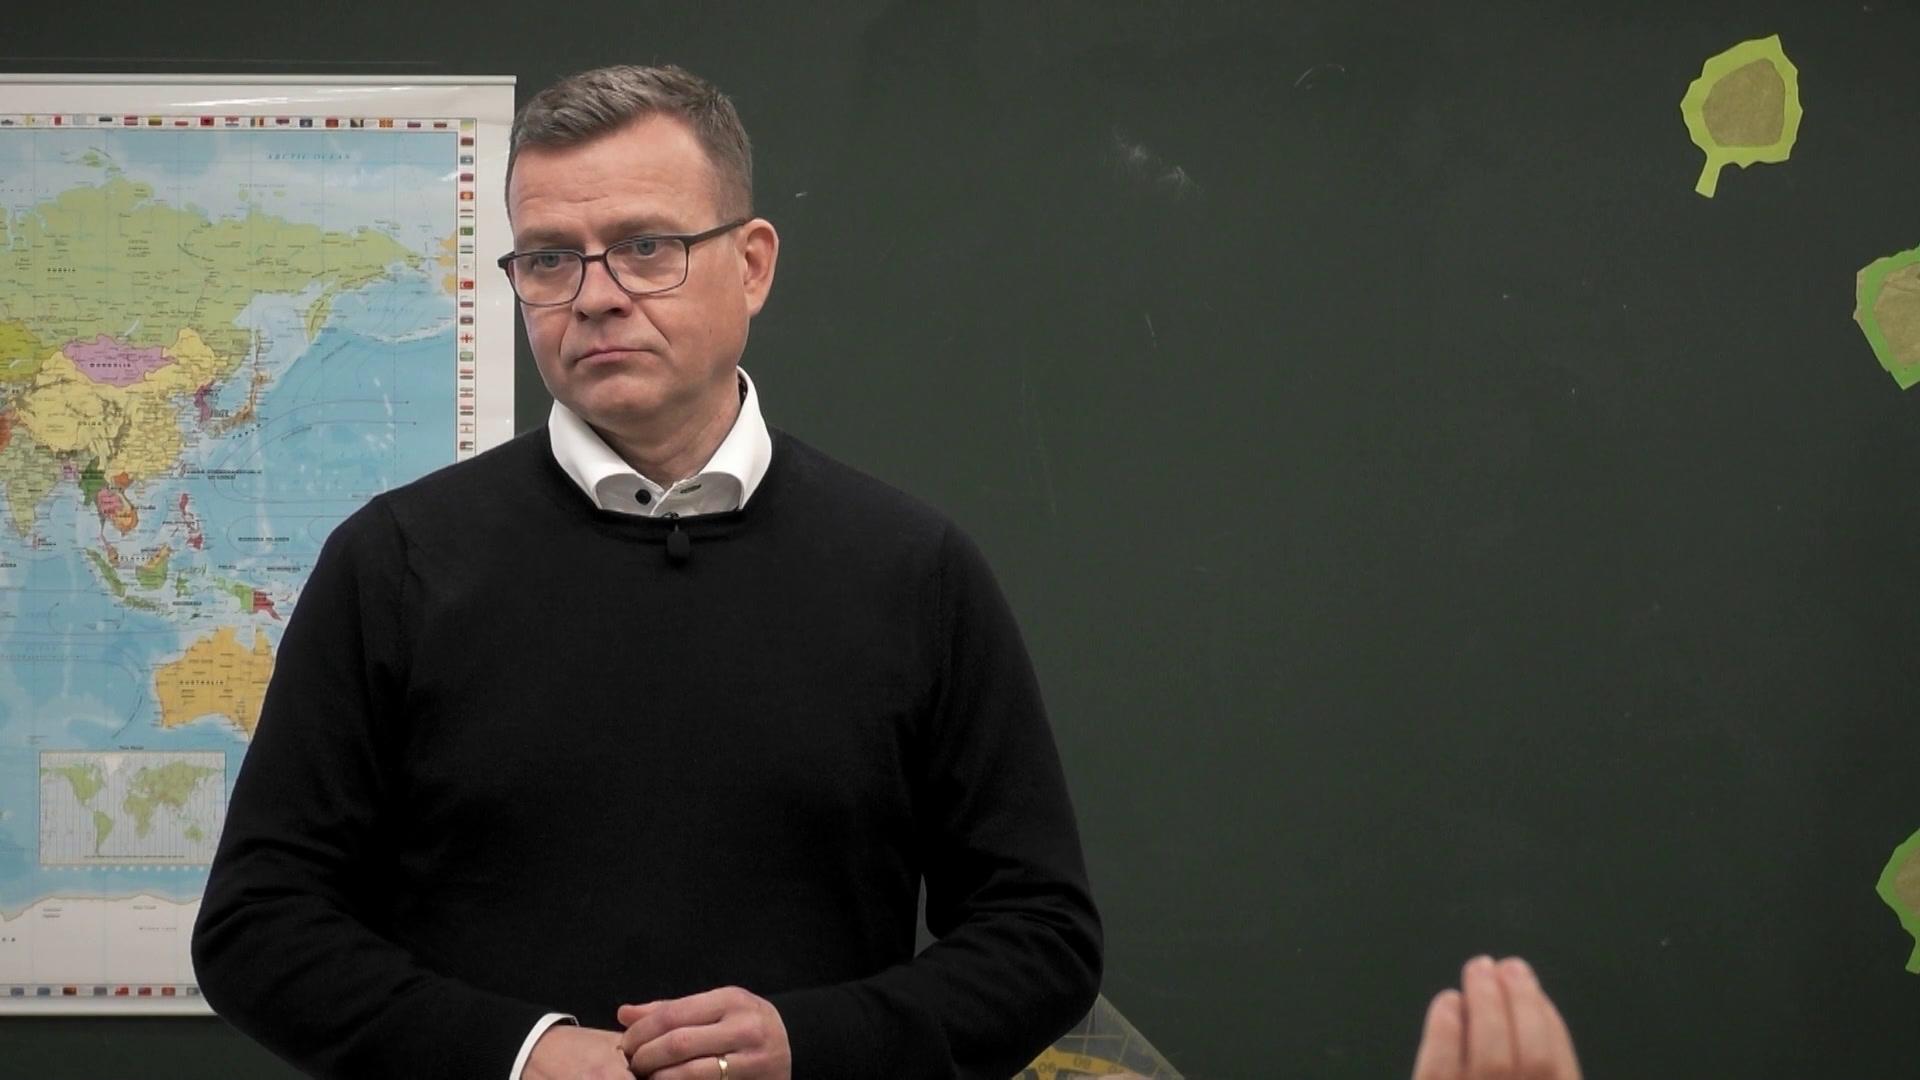 Oppilaat painostavat Petteri Orpon antamaan rehellisen vastauksen – näin hän arvottaa kulttuurin ja vanhustenhoidon